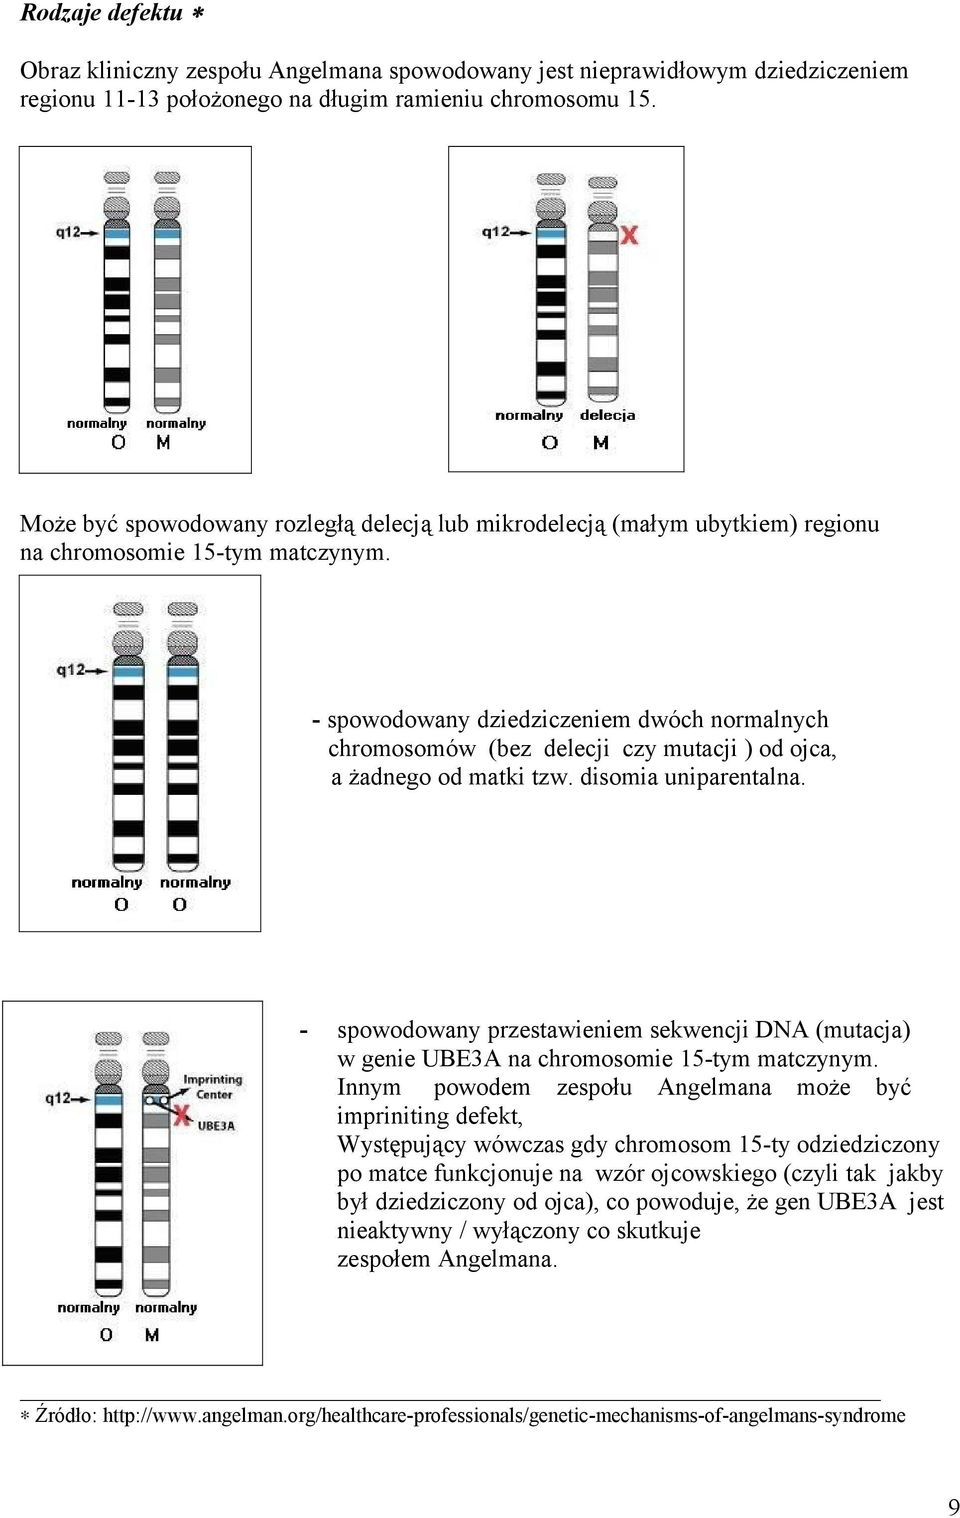 chchromosomów - spowodowany dziedziczeniem dwóch normalnych chromosomów (bez delecji czy mutacji ) od ojca, a żadnego od matki tzw. disomia uniparentalna.